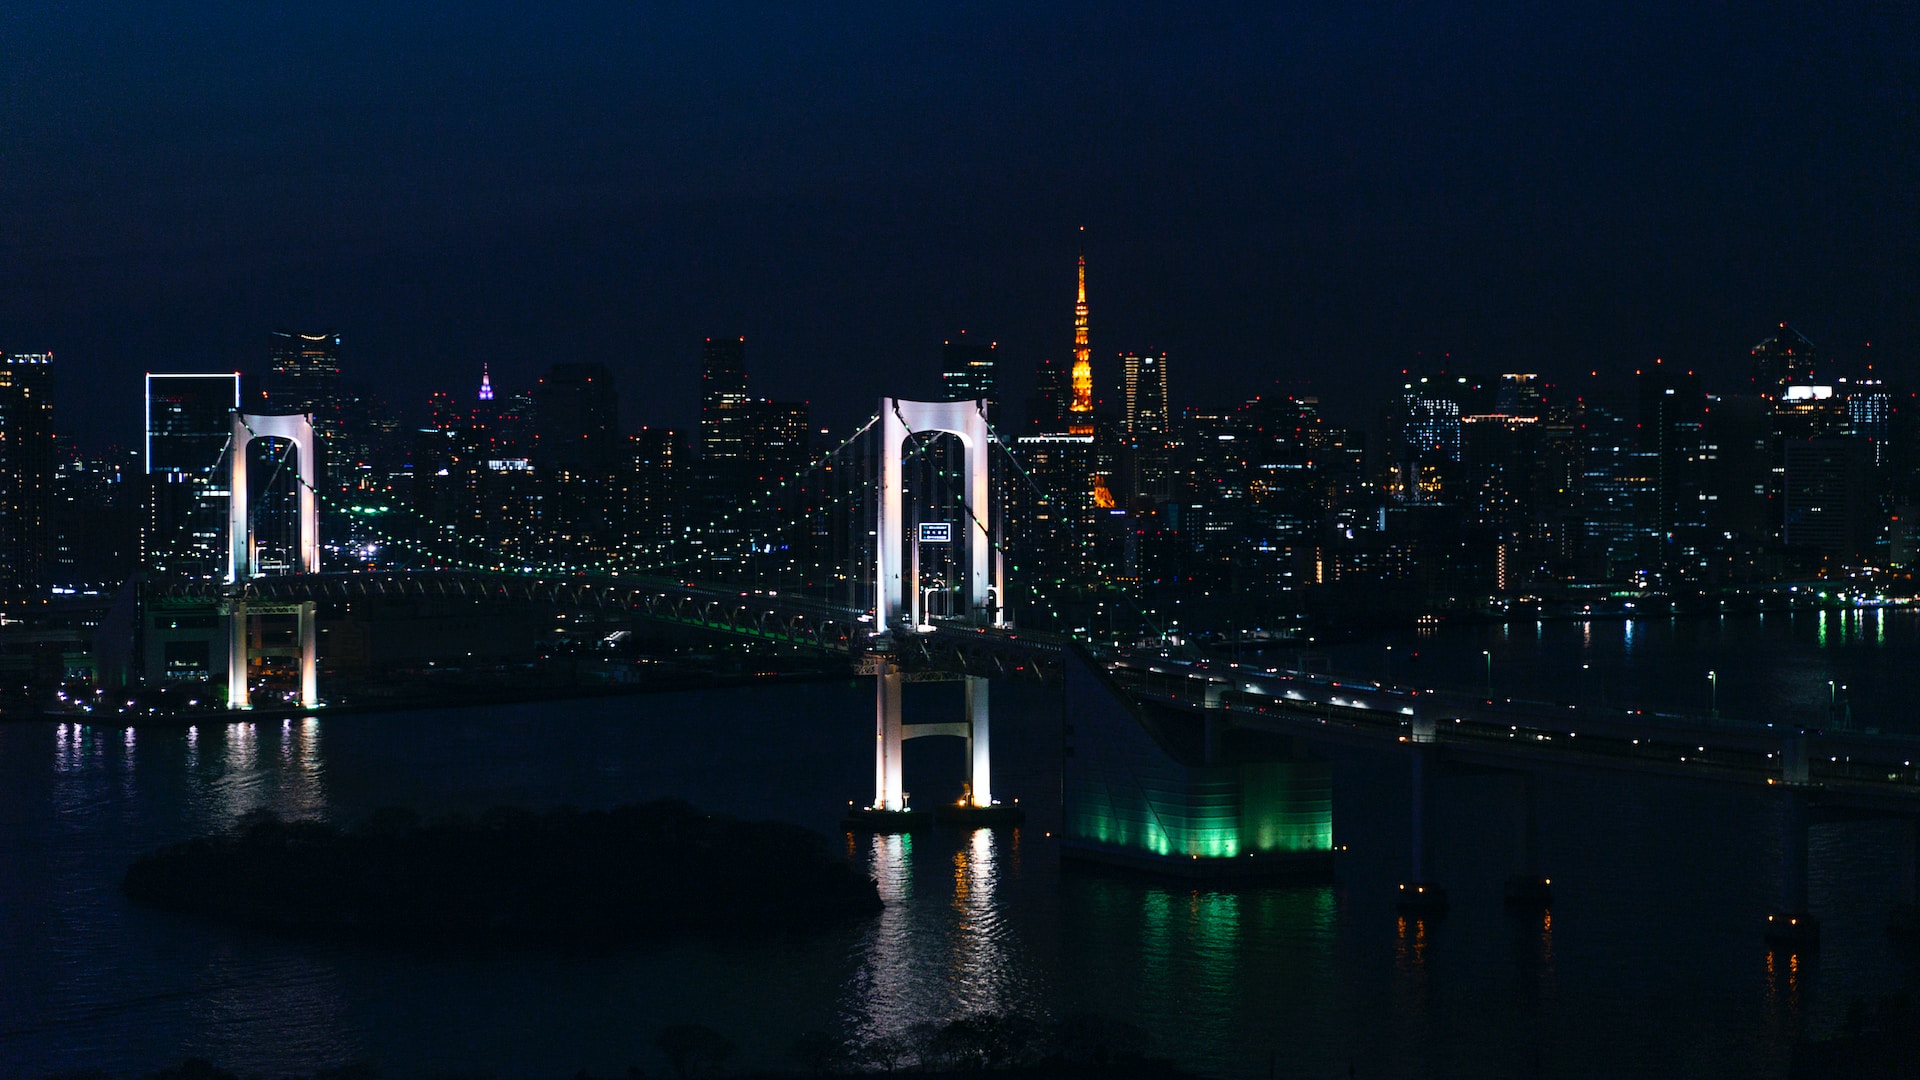 Croisière nocturne dans la baie de Tokyo